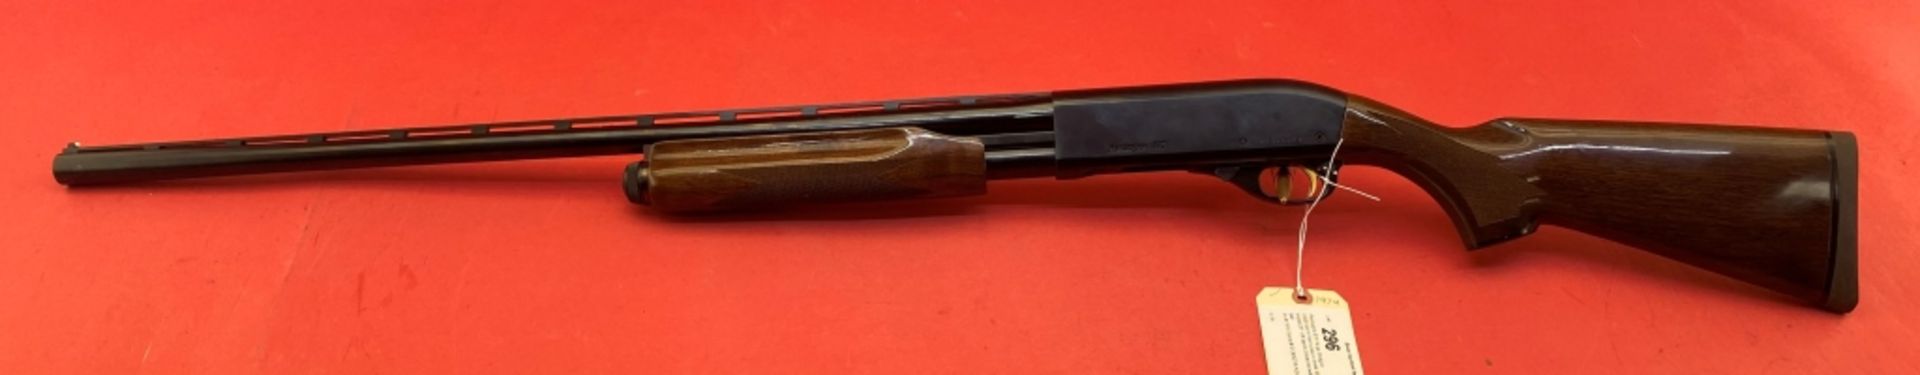 Remington 870 16 ga Shotgun - Image 12 of 13